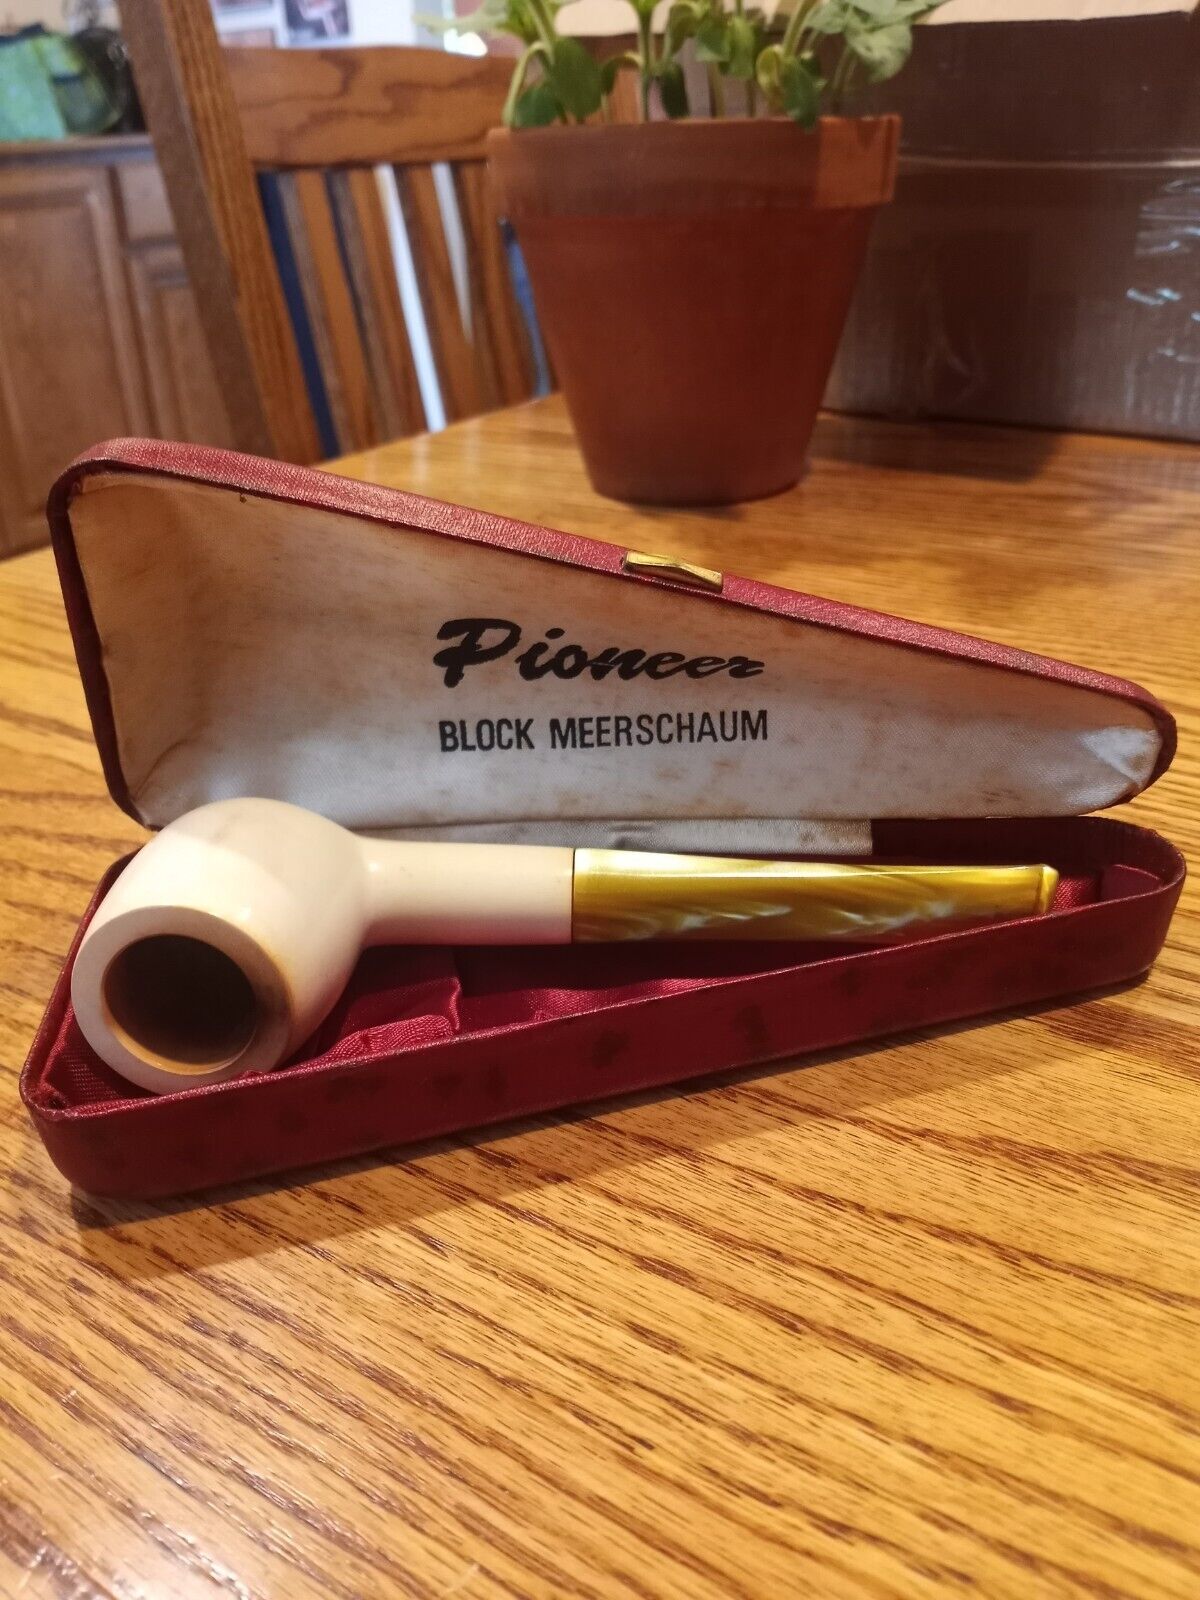 Pioneer Block Meerschaum Pipe 